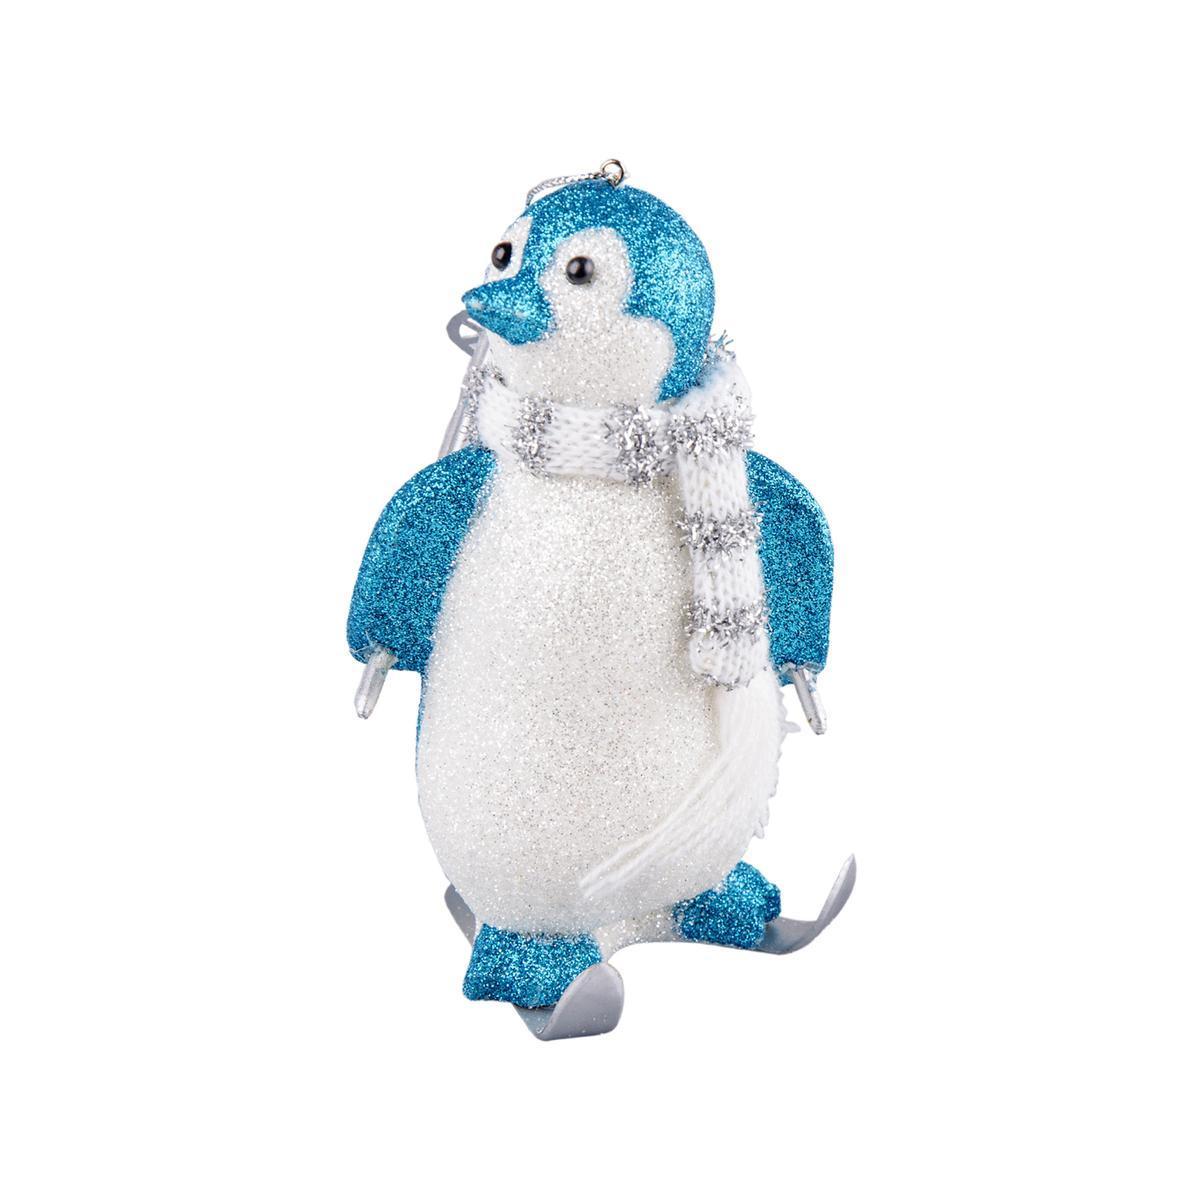 Suspension pingouins - Plastique - 7,5 x 6 x H 13,5 cm - Bleu et argent